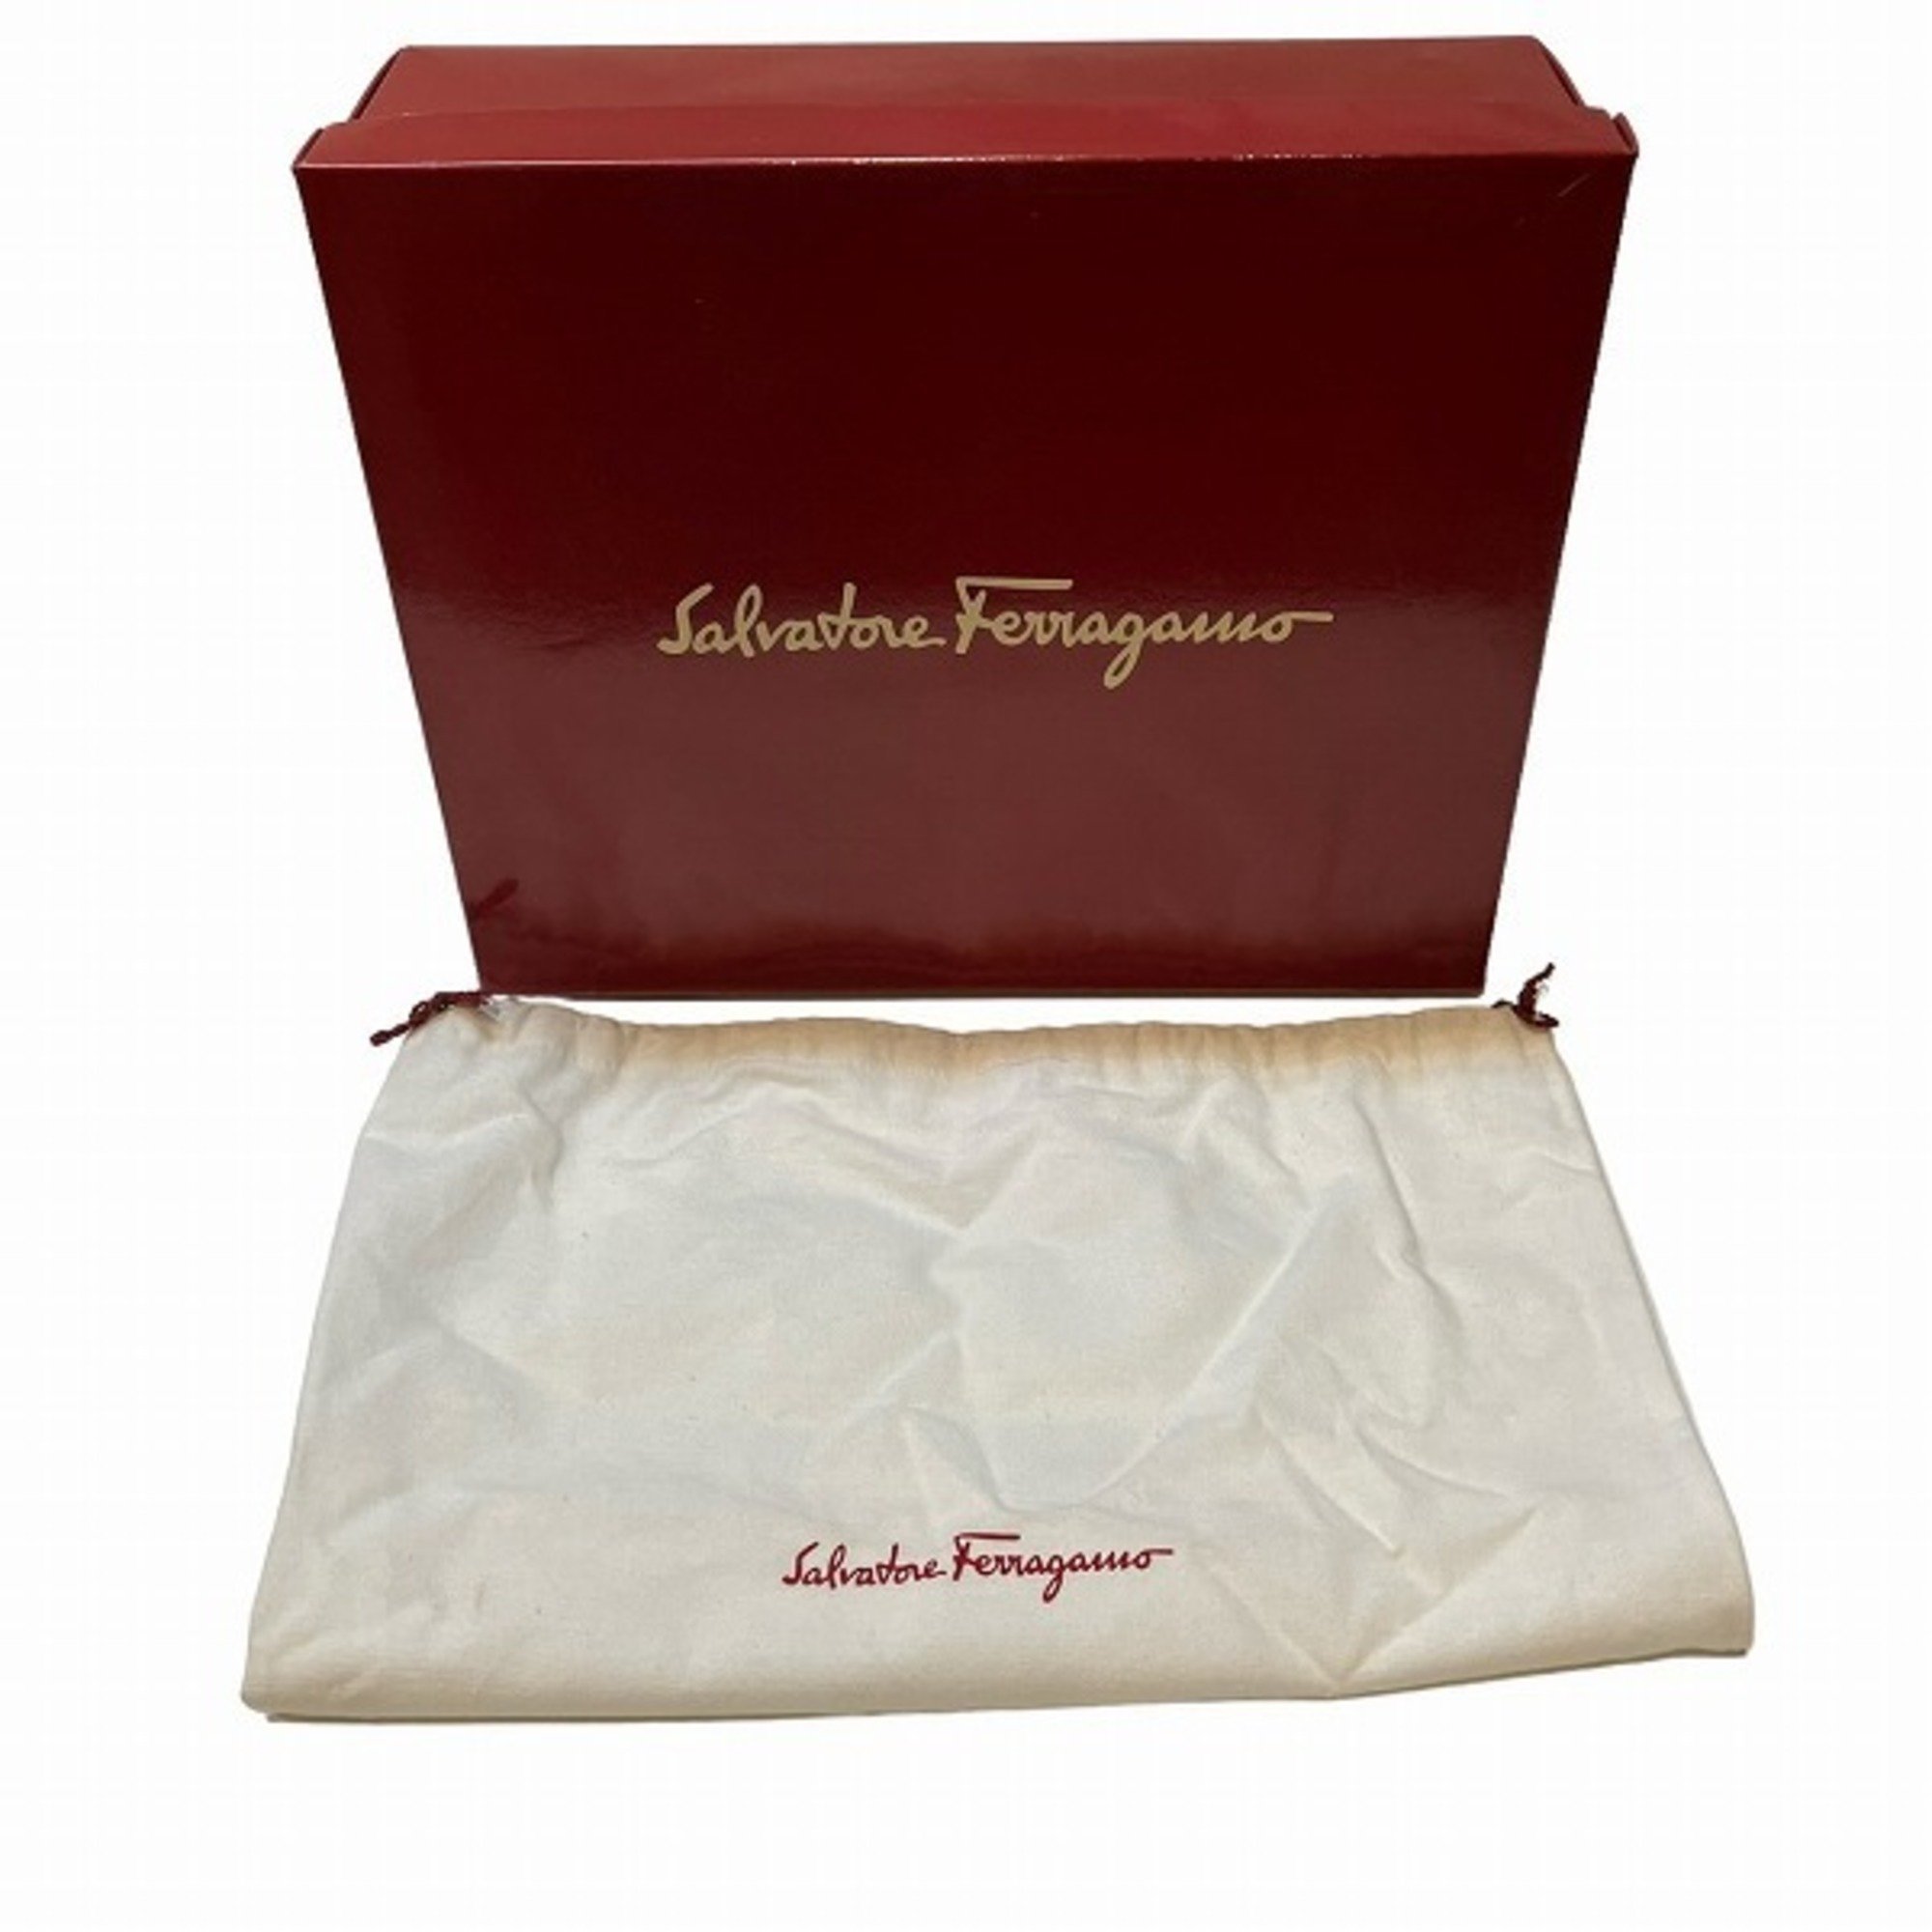 Salvatore Ferragamo Ferragamo Vara EE-21 1922 Bag Shoulder Handbag Ladies